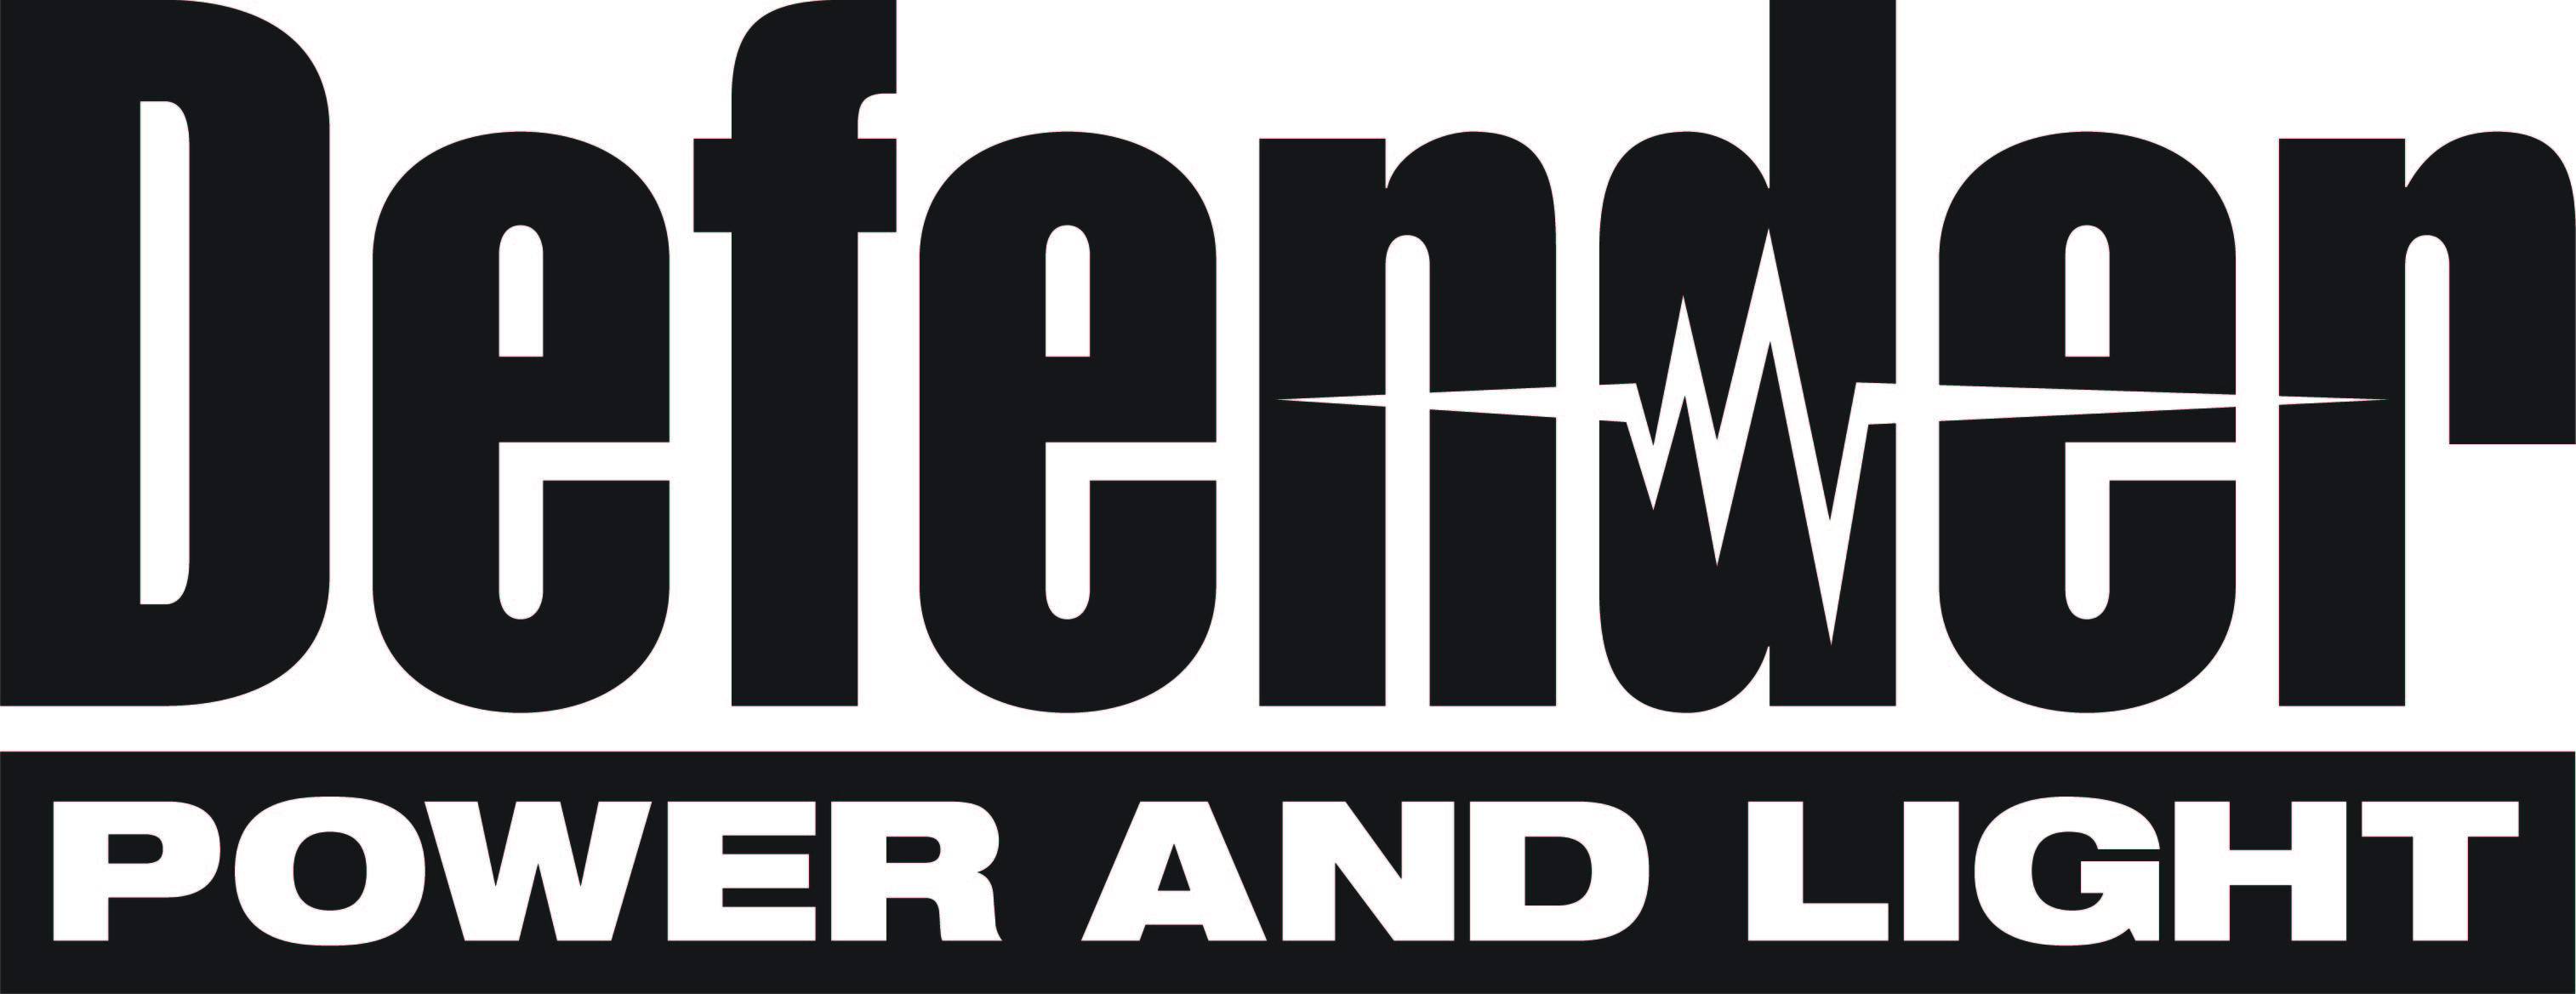 defenderpower - logo